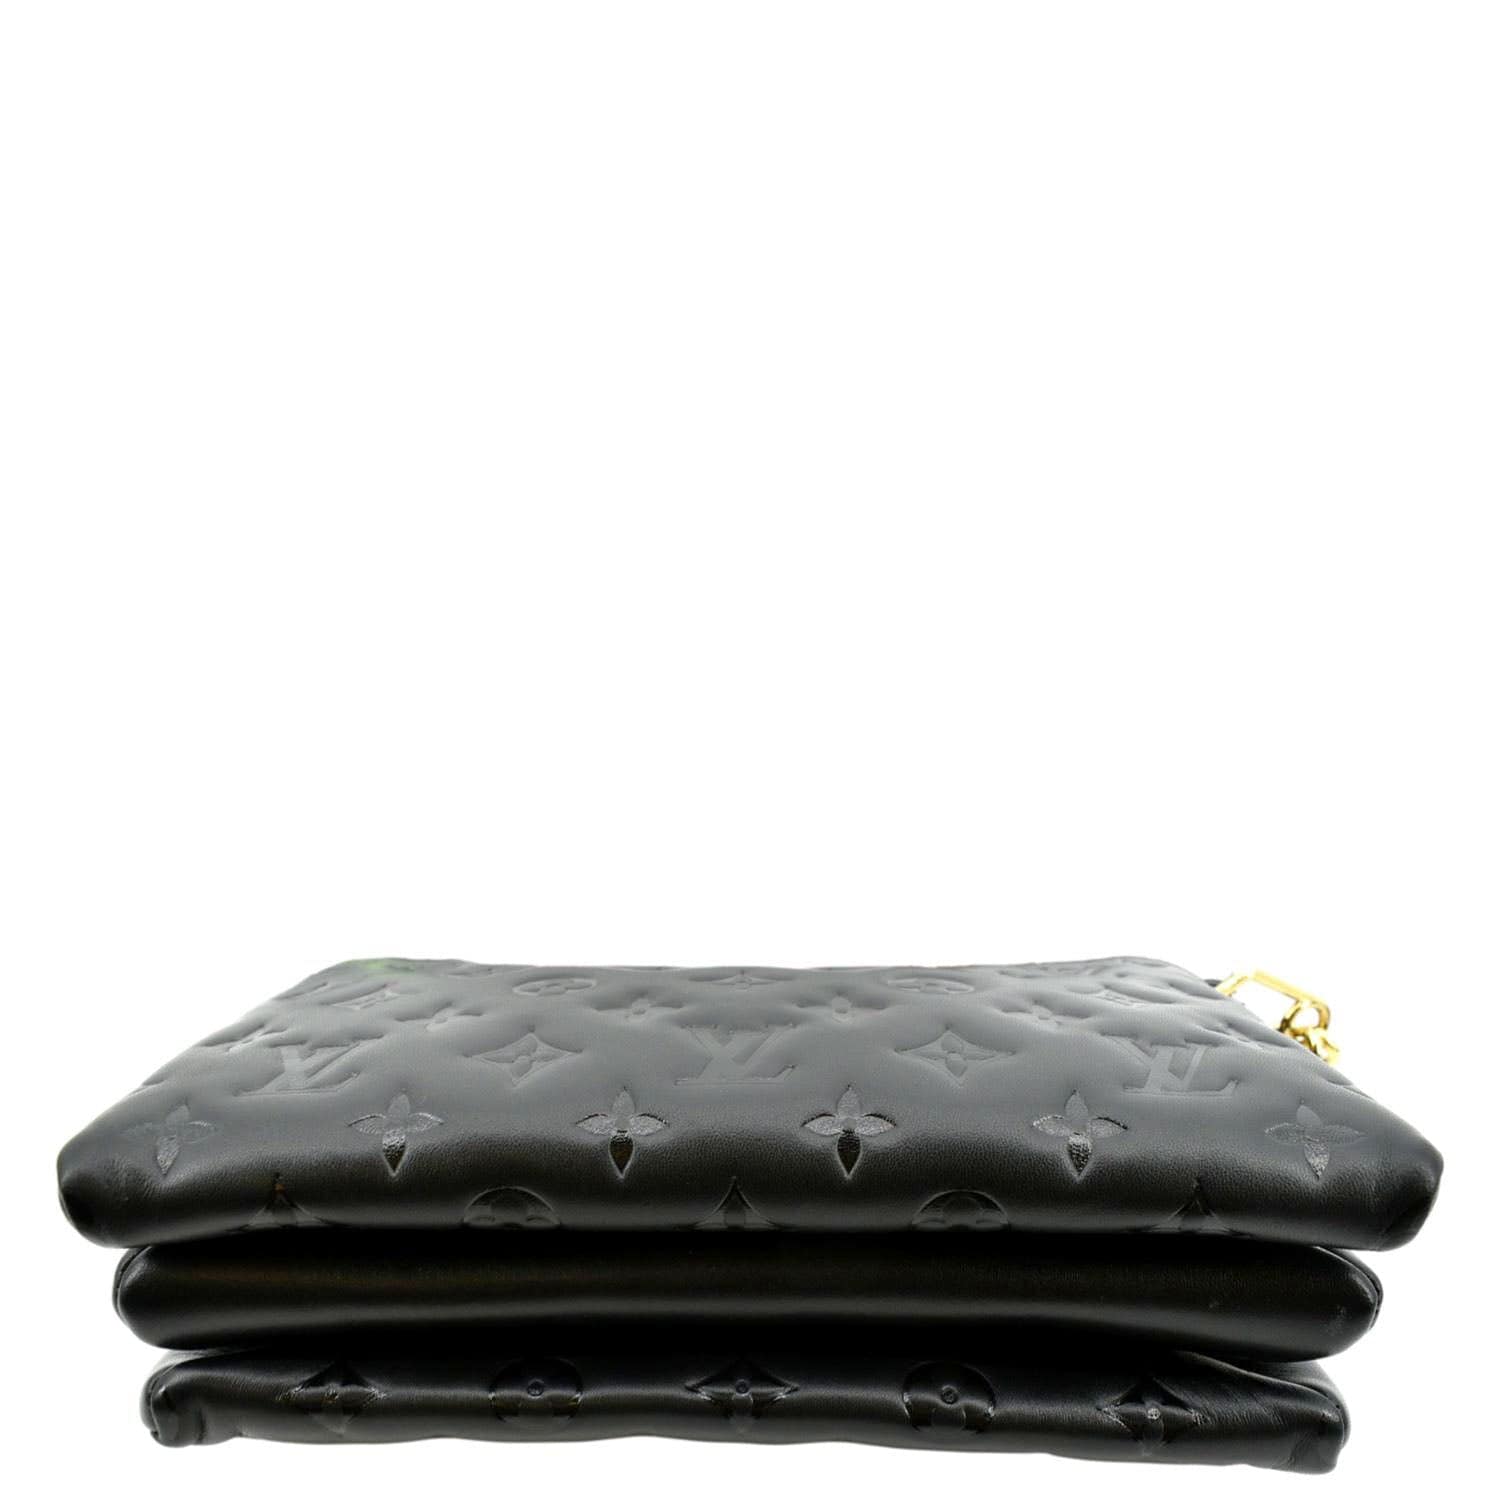 Louis Vuitton // Black Leather Monogram Coussin PM Bag – VSP Consignment